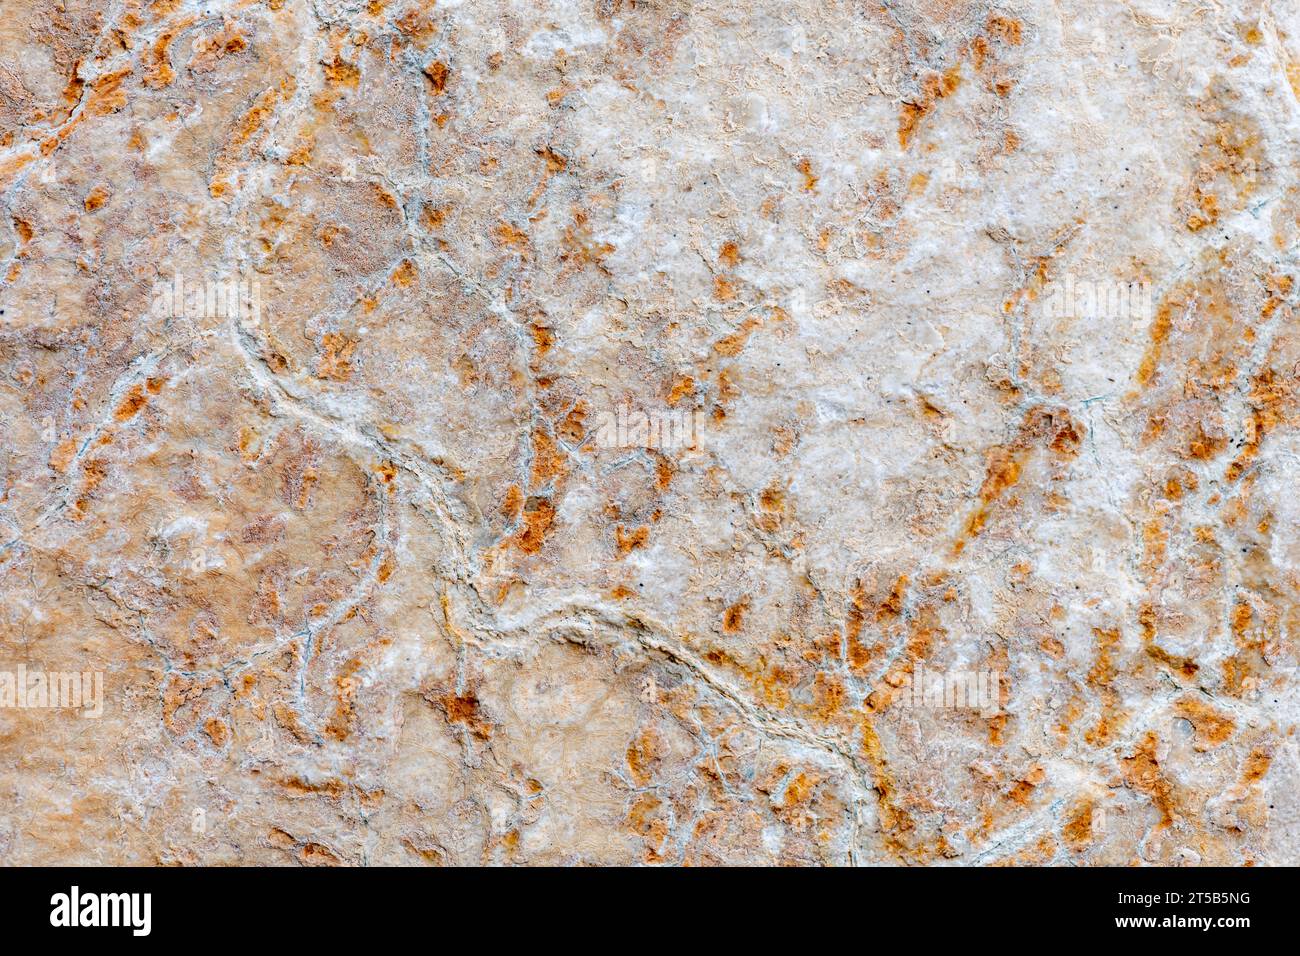 Farben, Texturen und Muster auf einem Naturstein. Steinhintergrund. Stockfoto